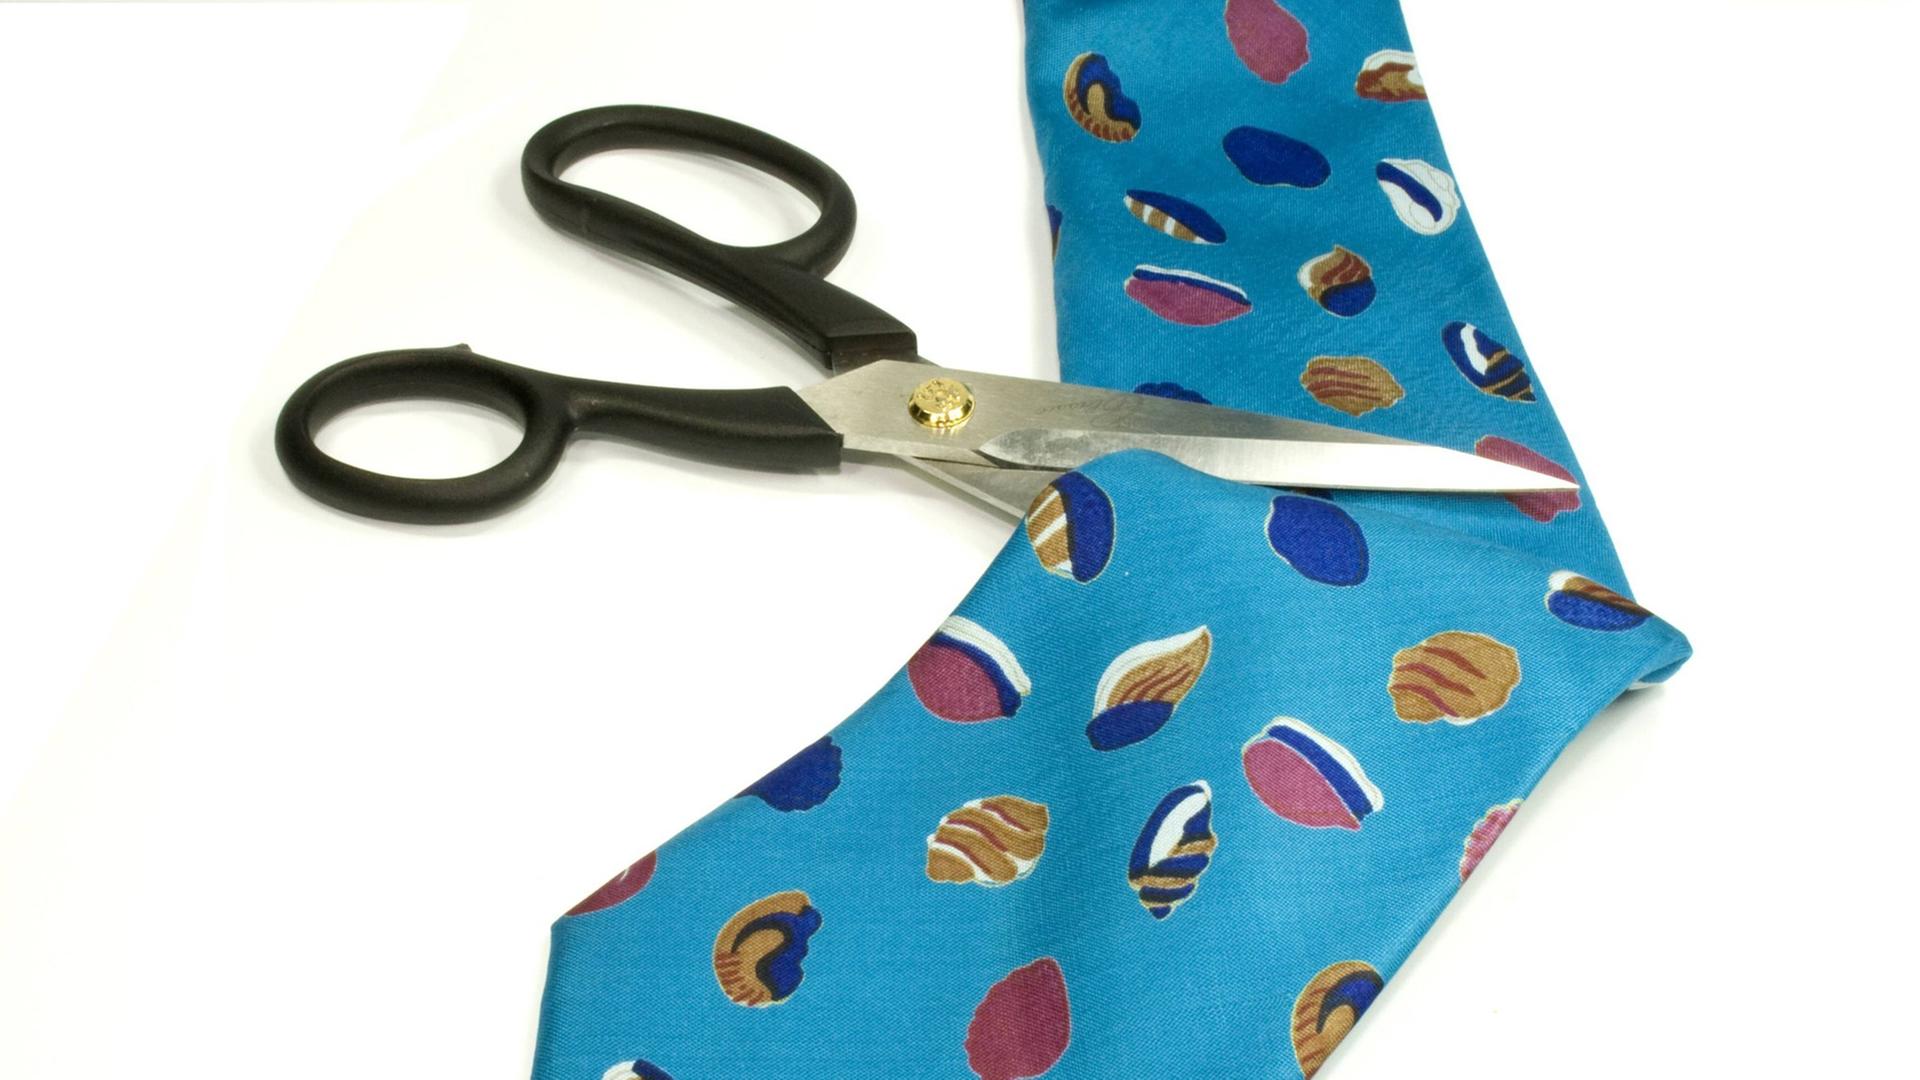 Eine Schere setzt zum Schnitt an einer Krawatte an.